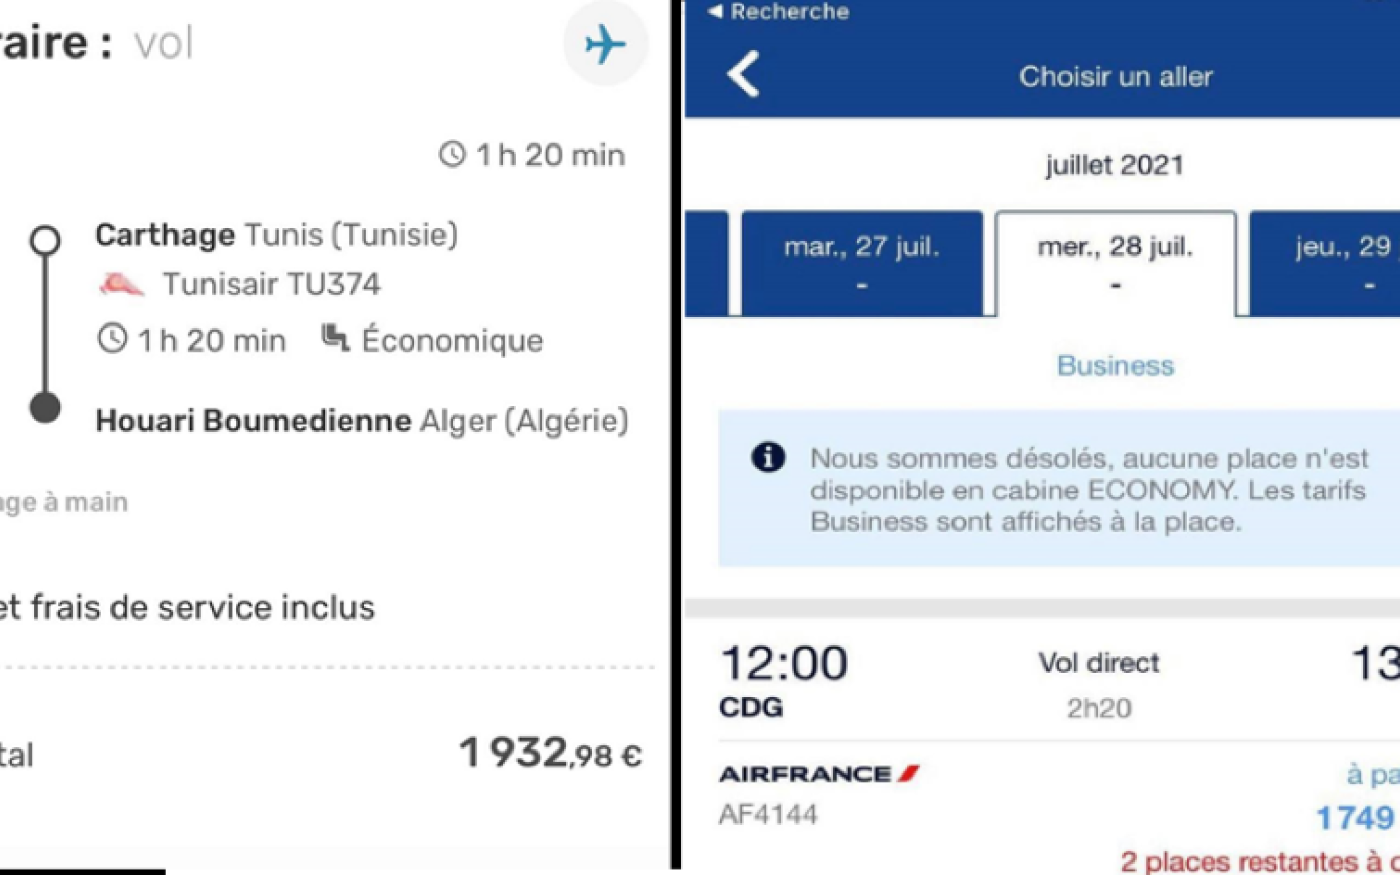 Captures d’écran des sites de réservation Tunis Air et Air France, partagées sur les pages Instagram El Fayçal et Algerian Aviation Information